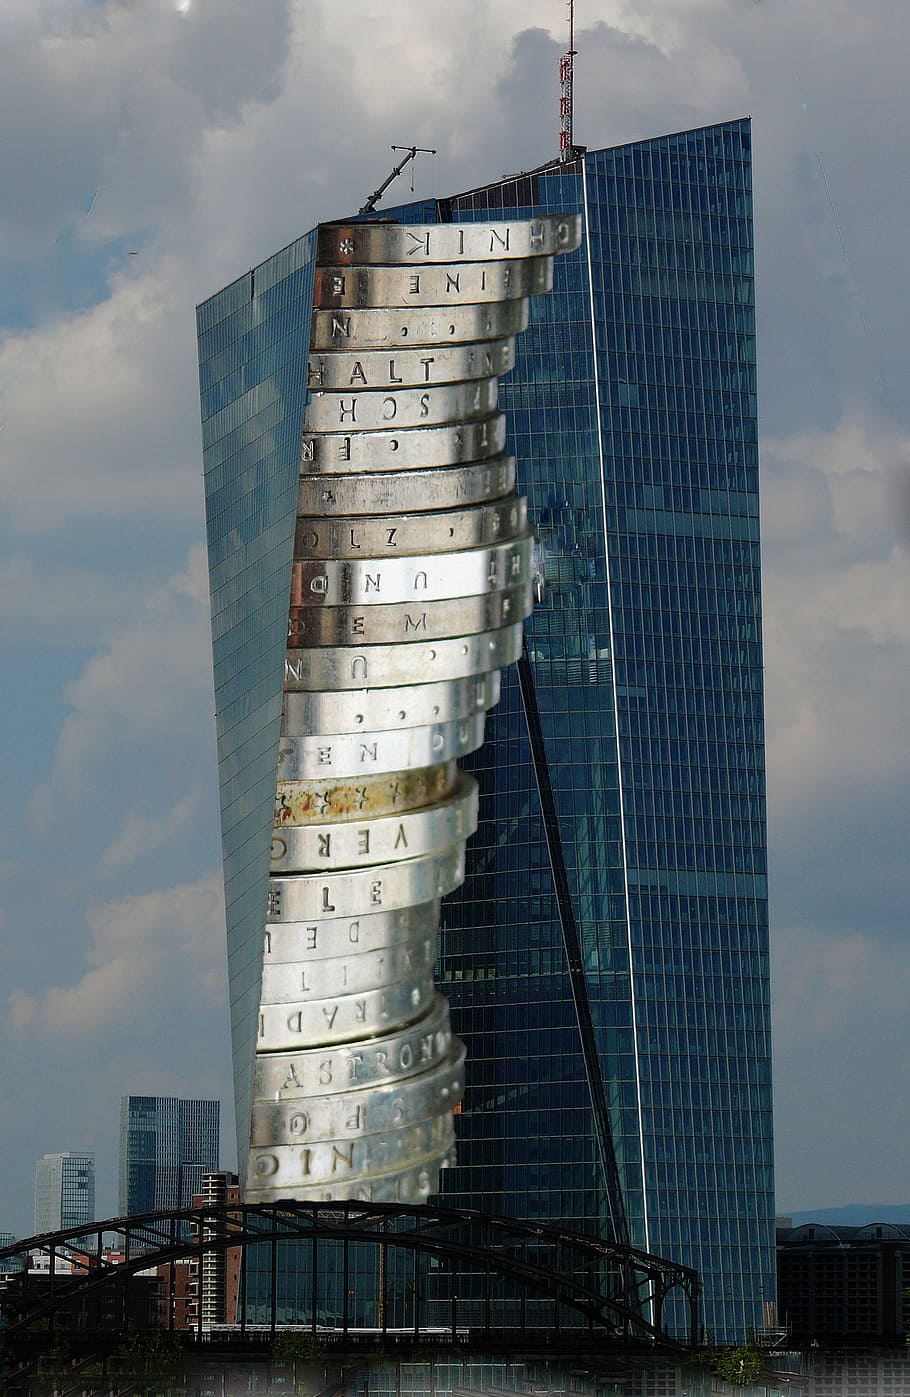 ecb, european central bank, skyscraper, glass facade, building, HD wallpaper